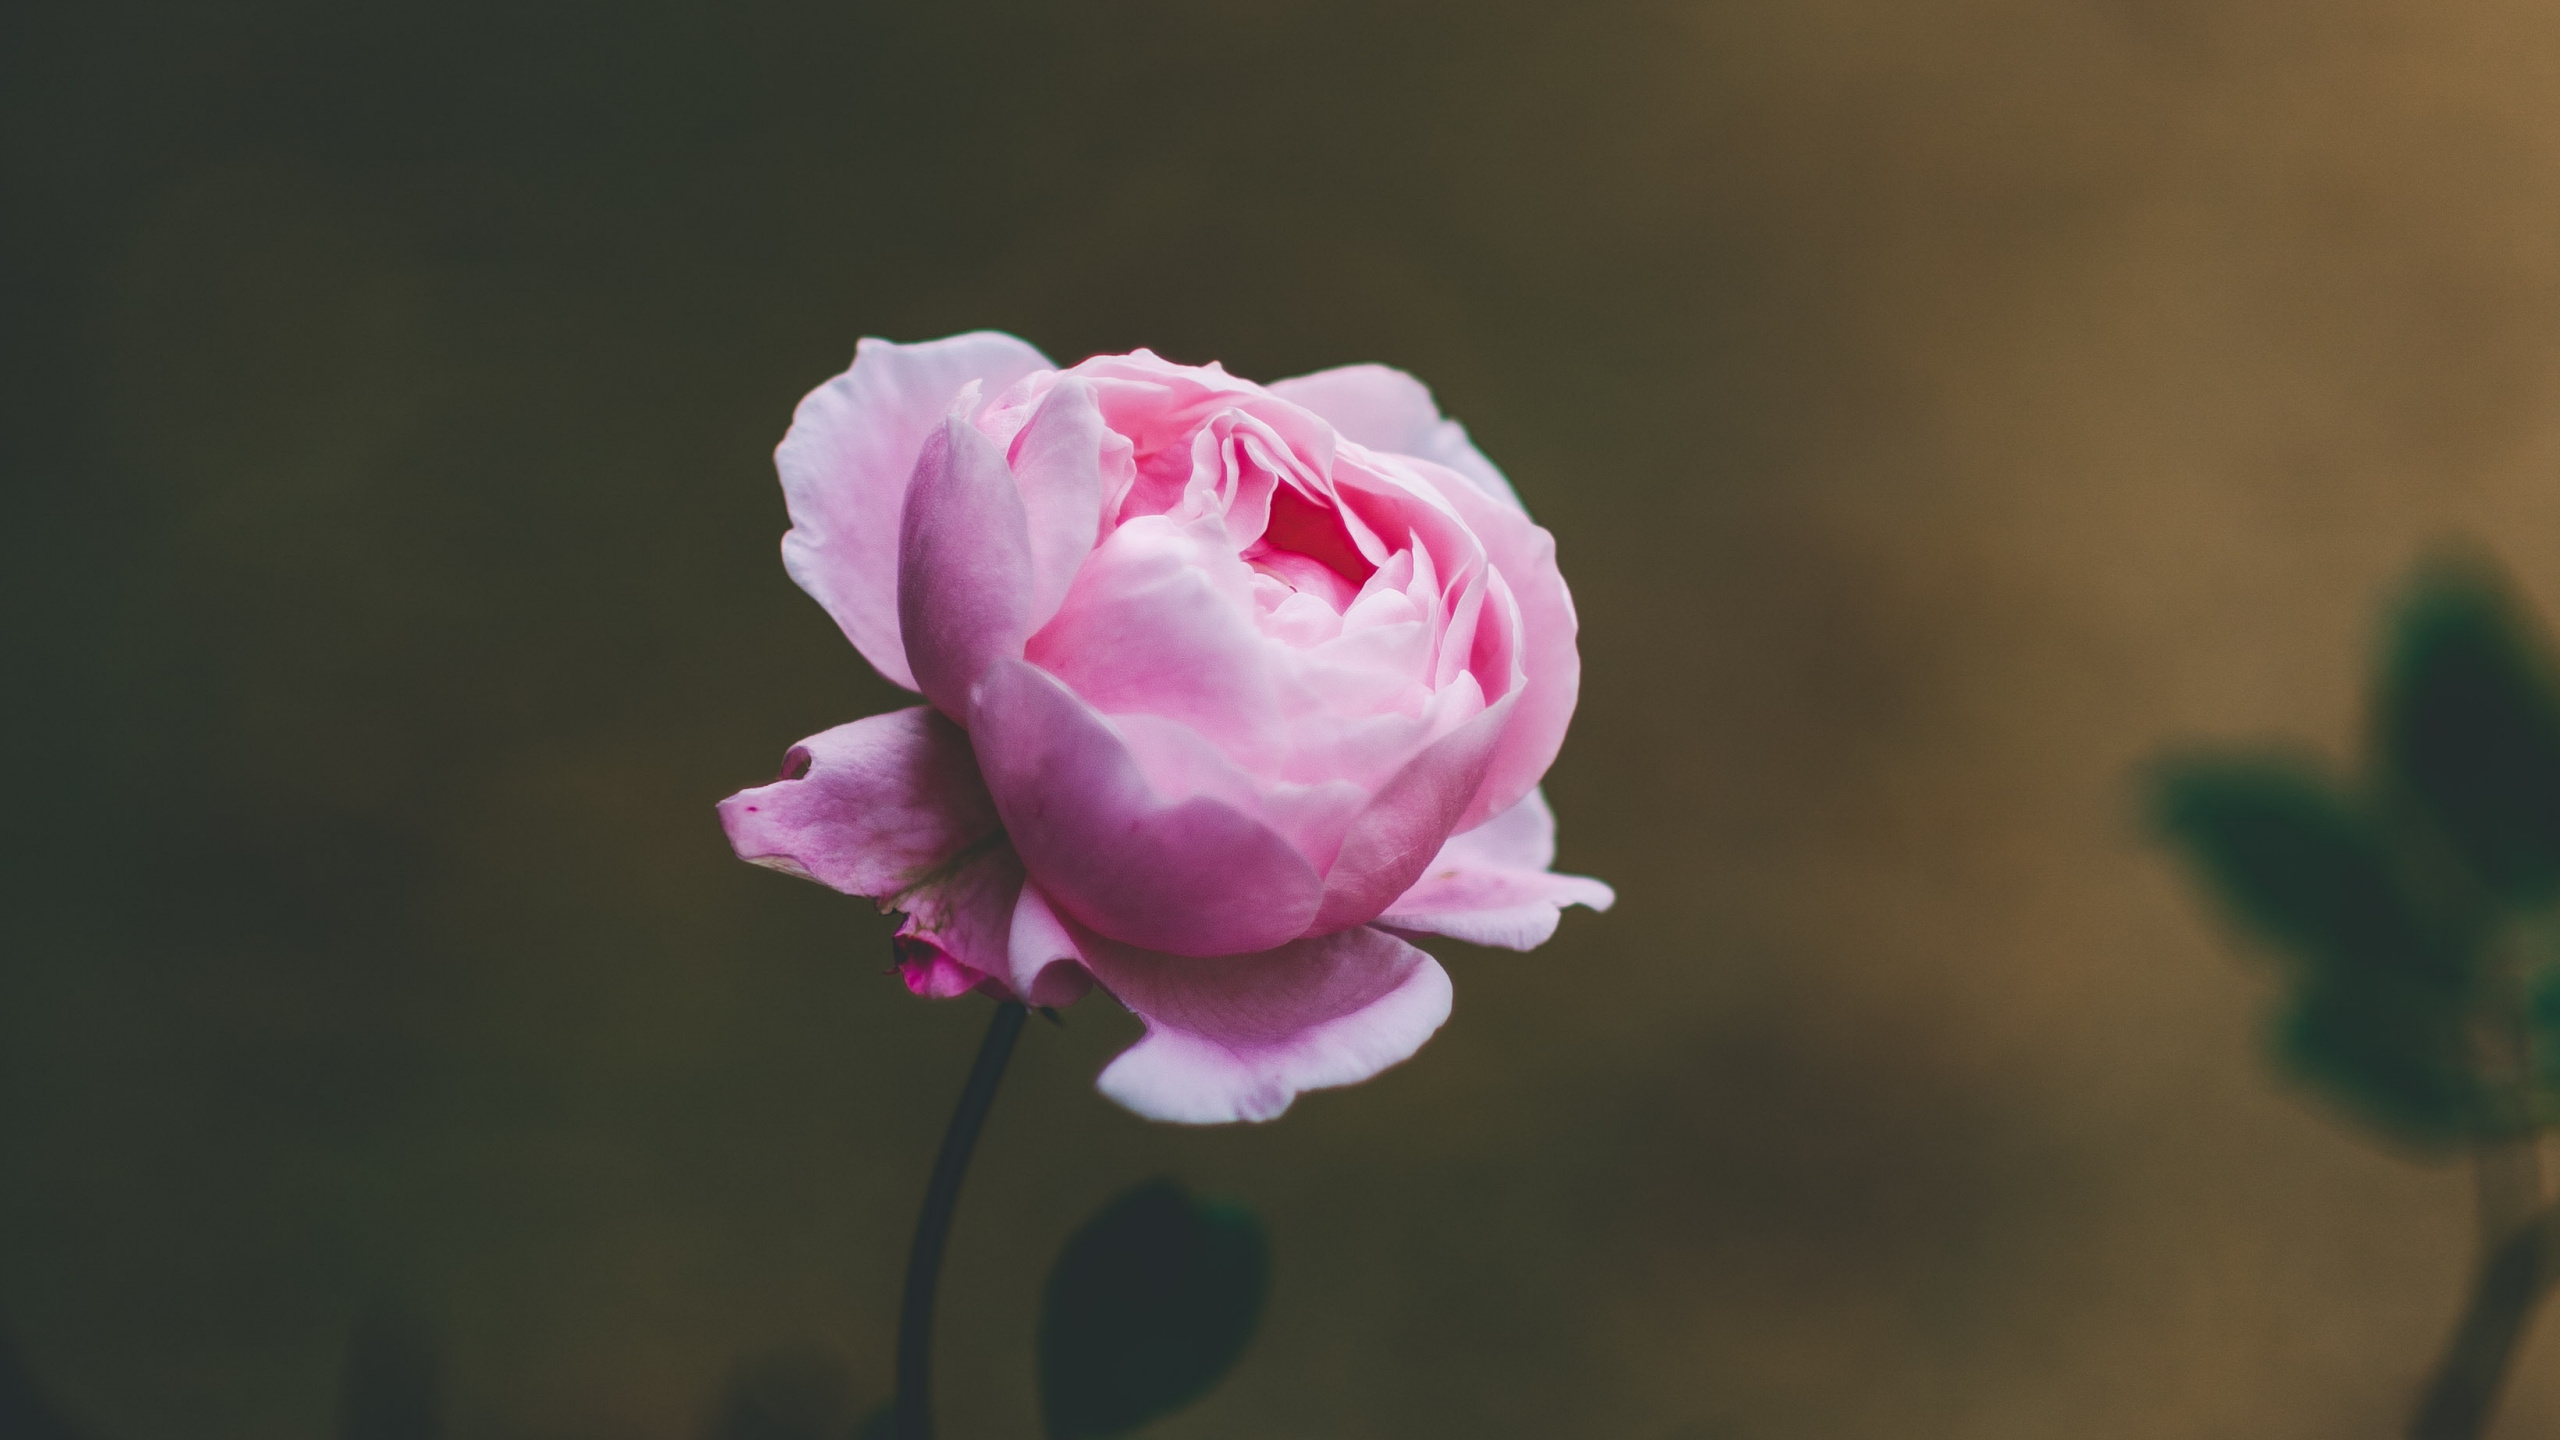 粉红色, 玫瑰花园, 玫瑰家庭, 显花植物, 工厂 壁纸 2560x1440 允许